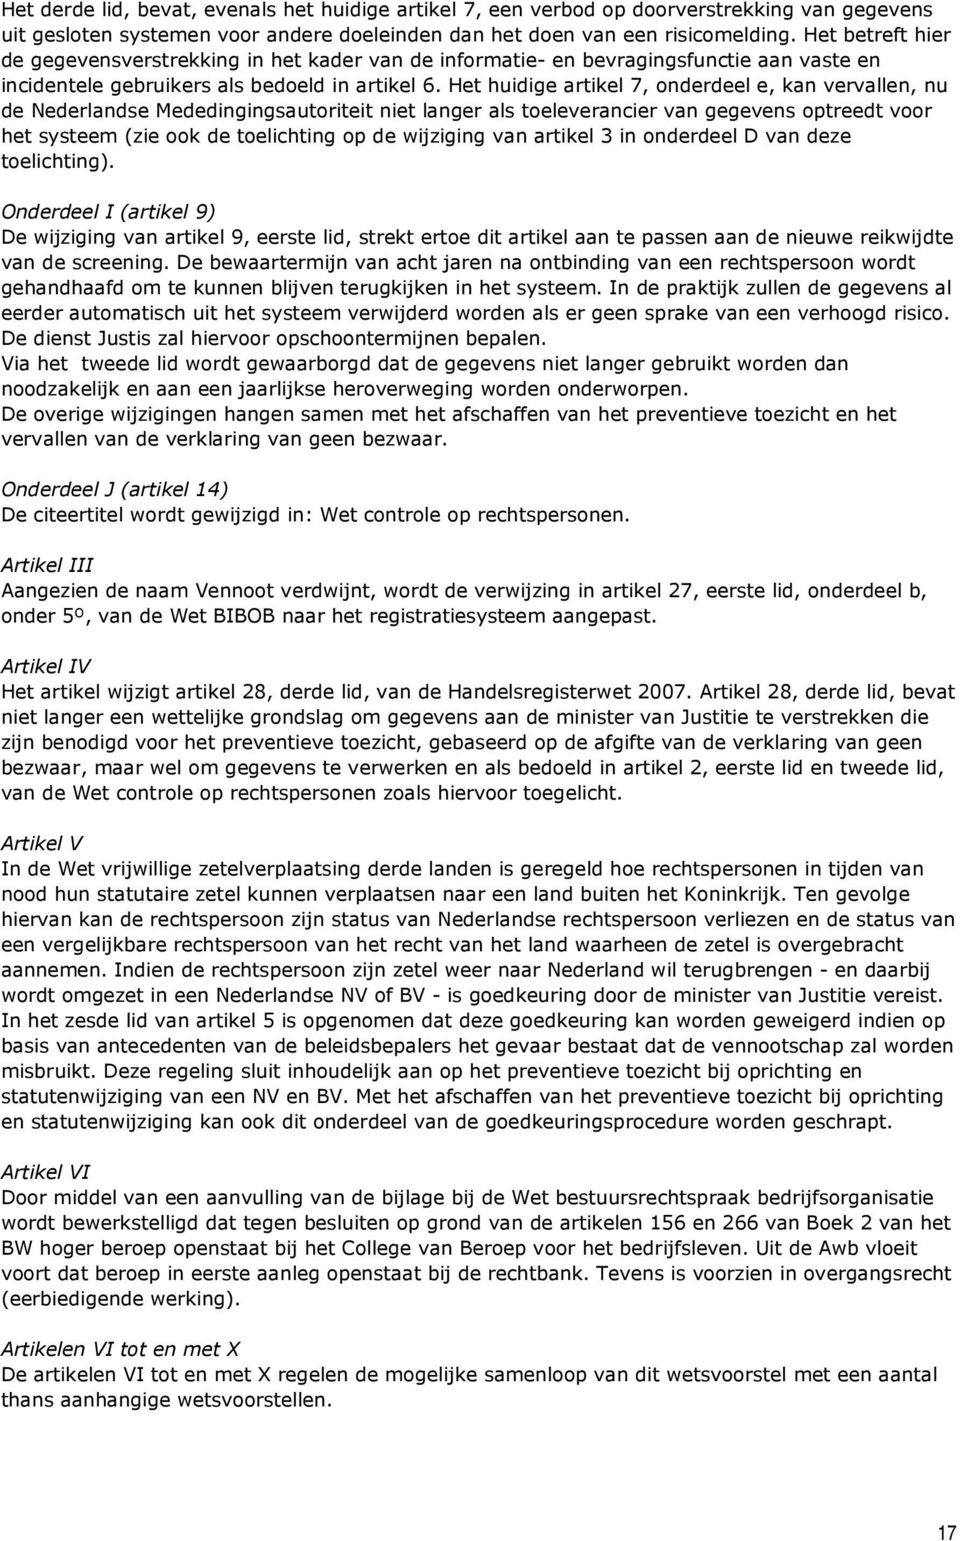 Het huidige artikel 7, onderdeel e, kan vervallen, nu de Nederlandse Mededingingsautoriteit niet langer als toeleverancier van gegevens optreedt voor het systeem (zie ook de toelichting op de